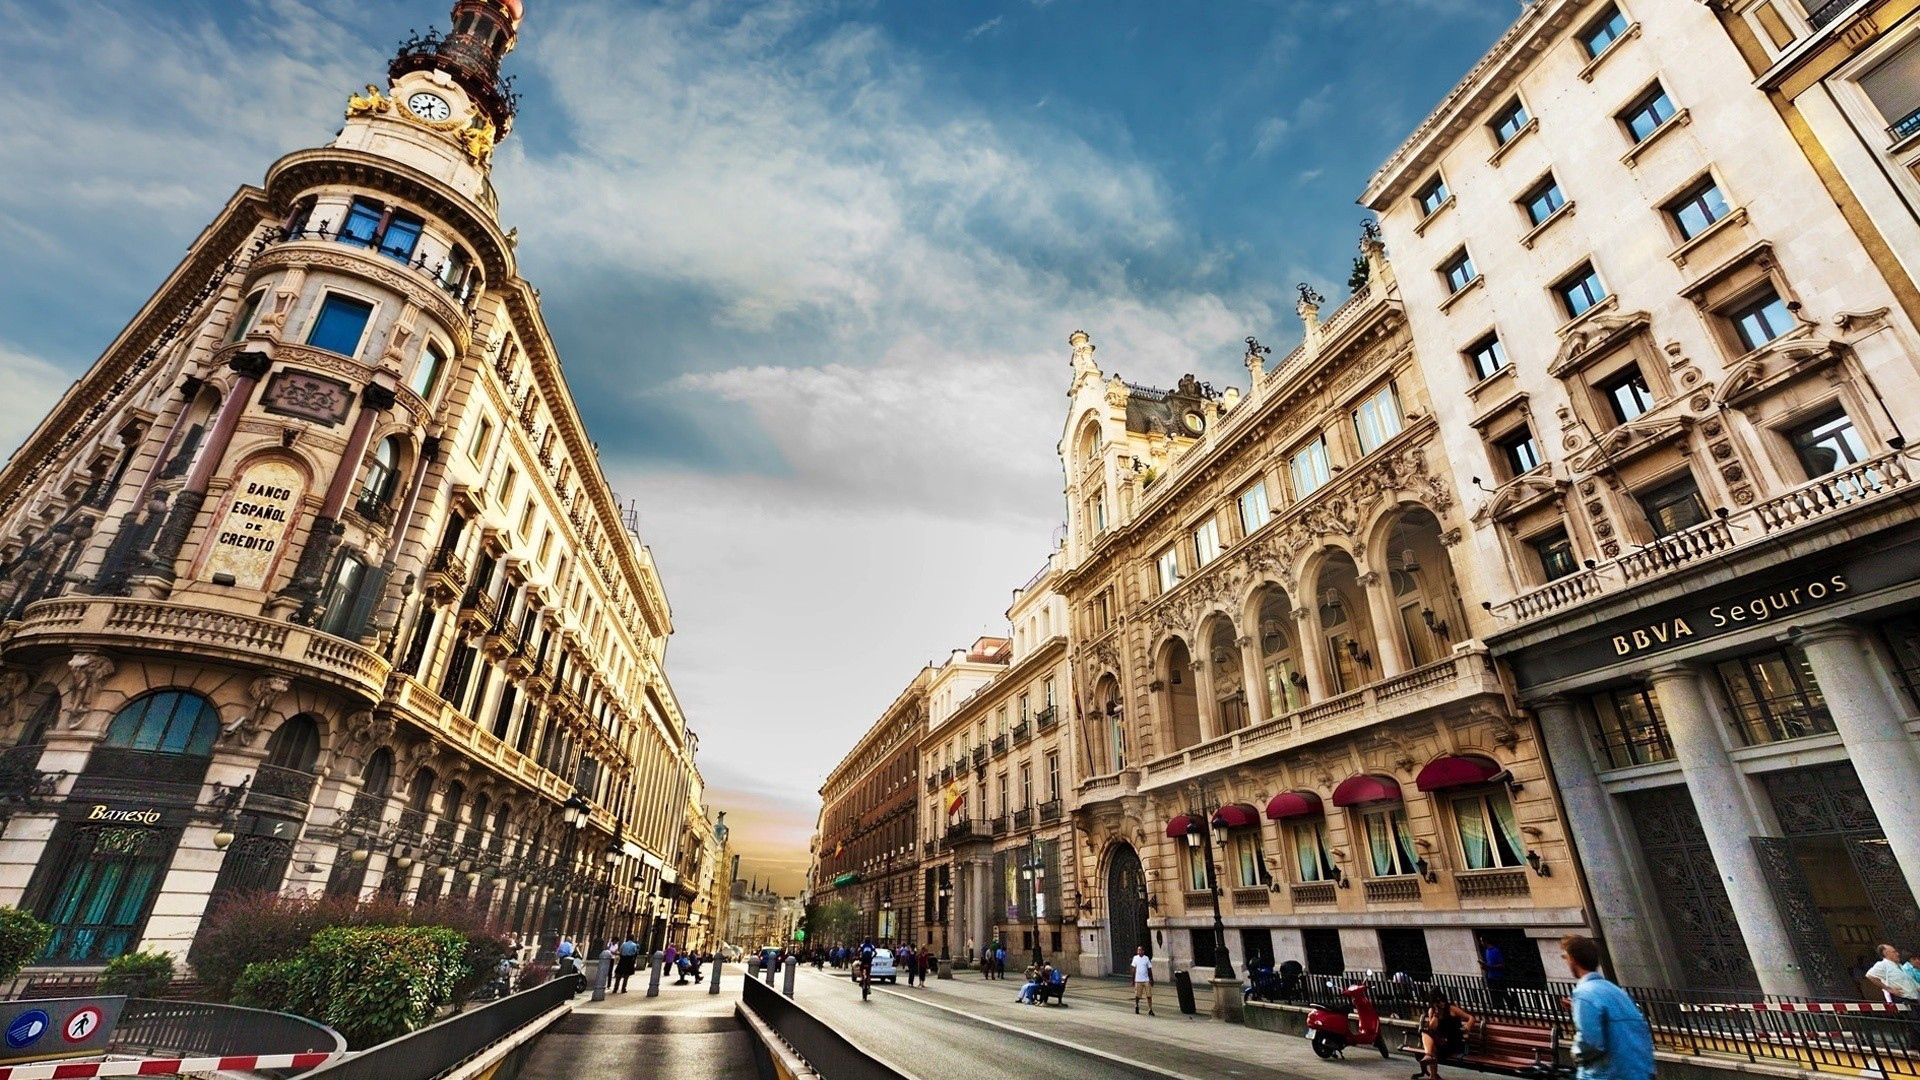 Скачать обои бесплатно Здания, Город, Города, Улица, Барселона, Барселона (Barcelona), Люди картинка на рабочий стол ПК